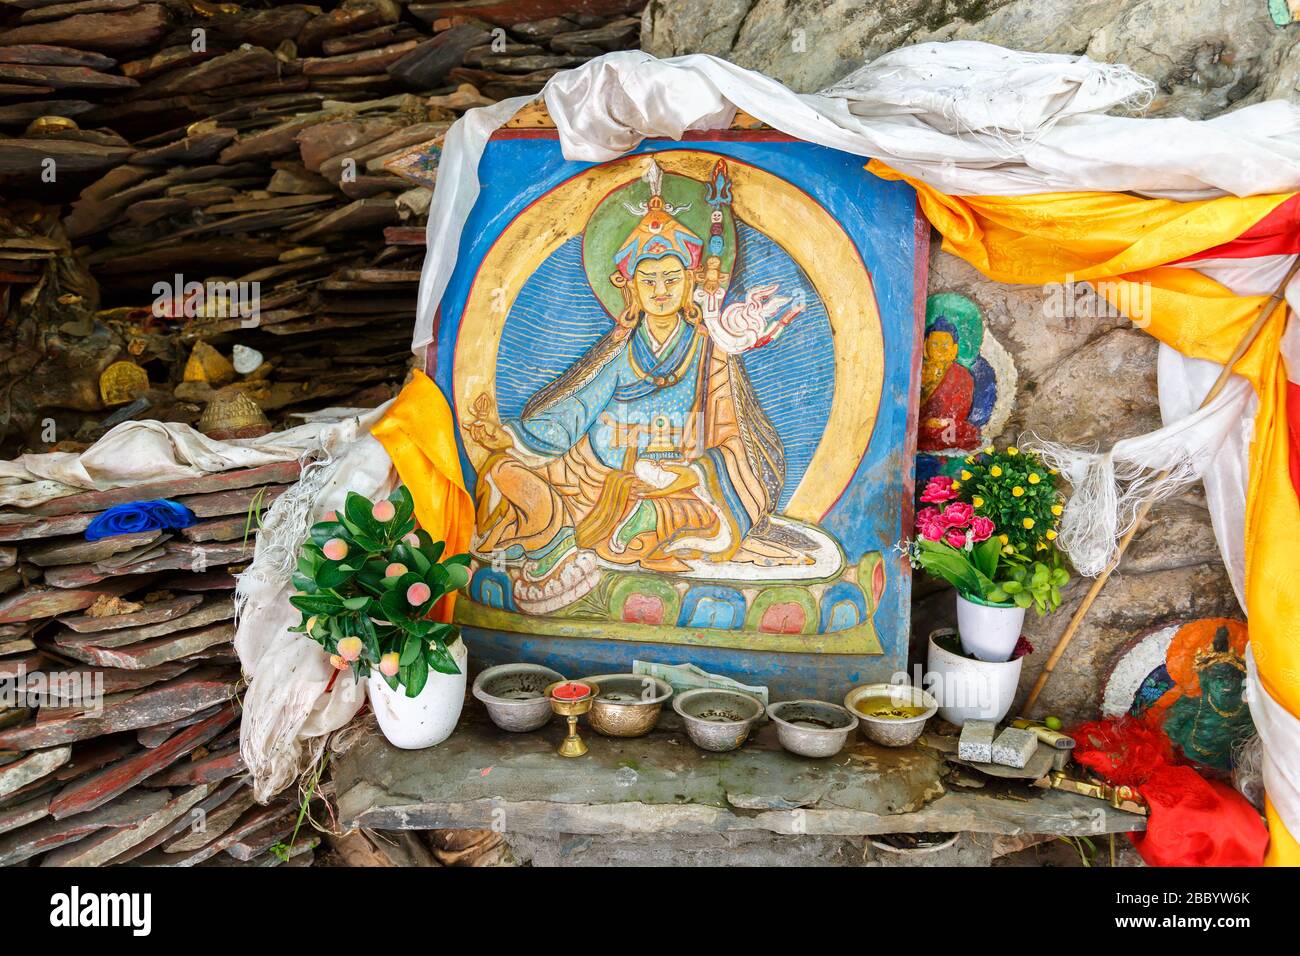 Farbenfrohe Malerei einer Gottheit des tibetischen buddhismus. Im Freien in einem Gebiet in der Nähe von Potala Palace. Mit Blumen und anderen Angeboten. Tibetische Kunst Stockfoto